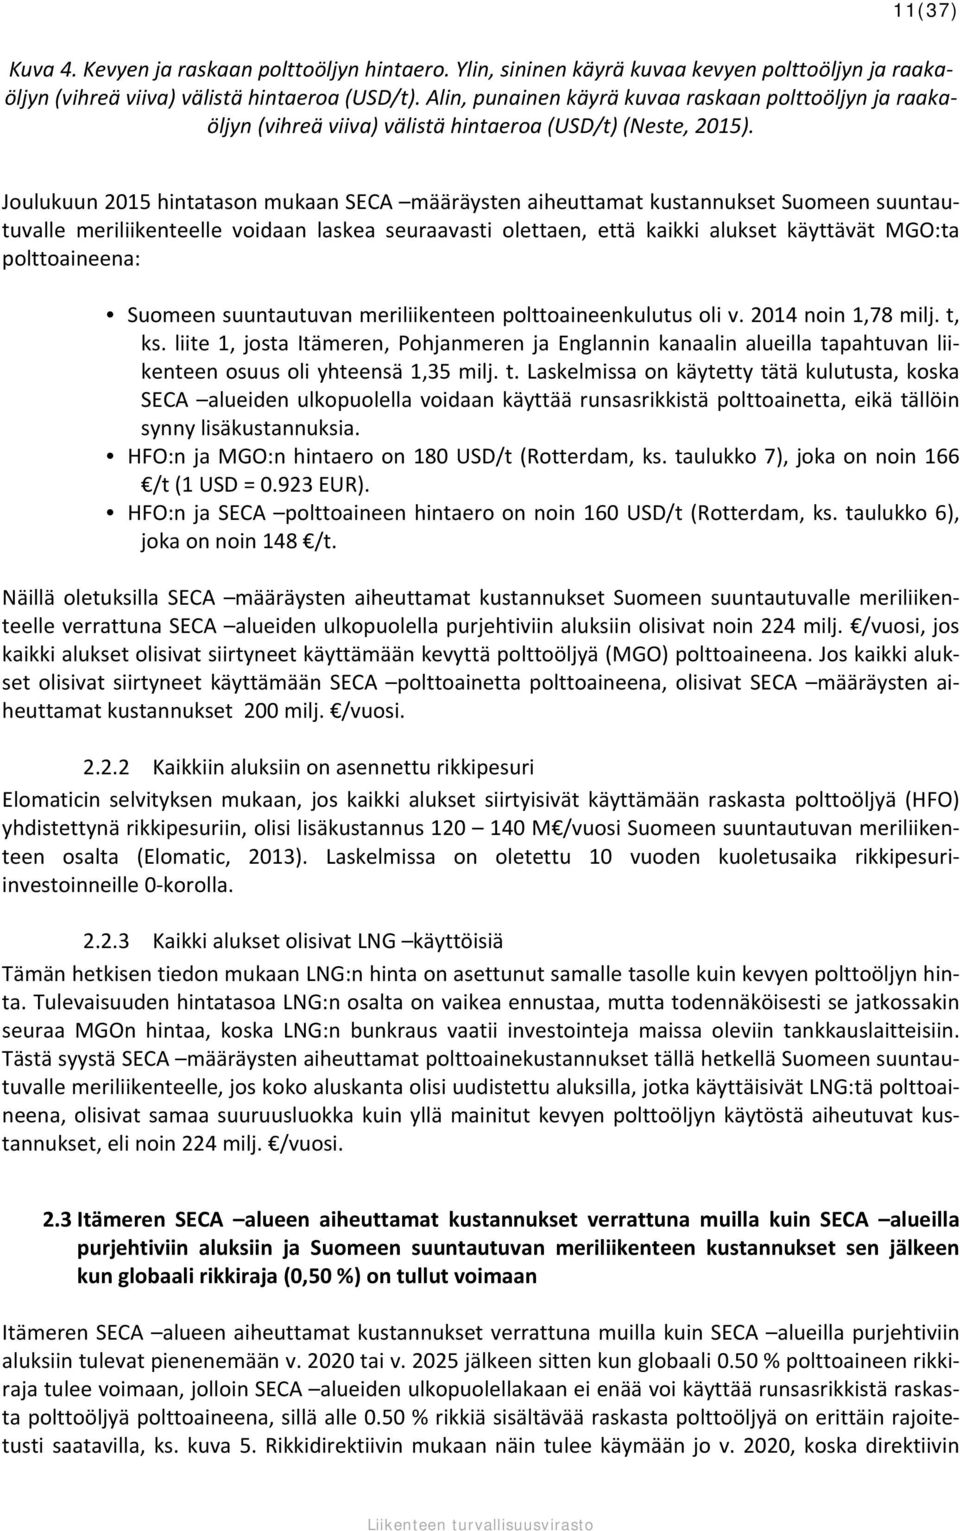 Joulukuun 2015 hintatason mukaan SECA määräysten aiheuttamat kustannukset Suomeen suuntautuvalle meriliikenteelle voidaan laskea seuraavasti olettaen, että kaikki alukset käyttävät MGO:ta